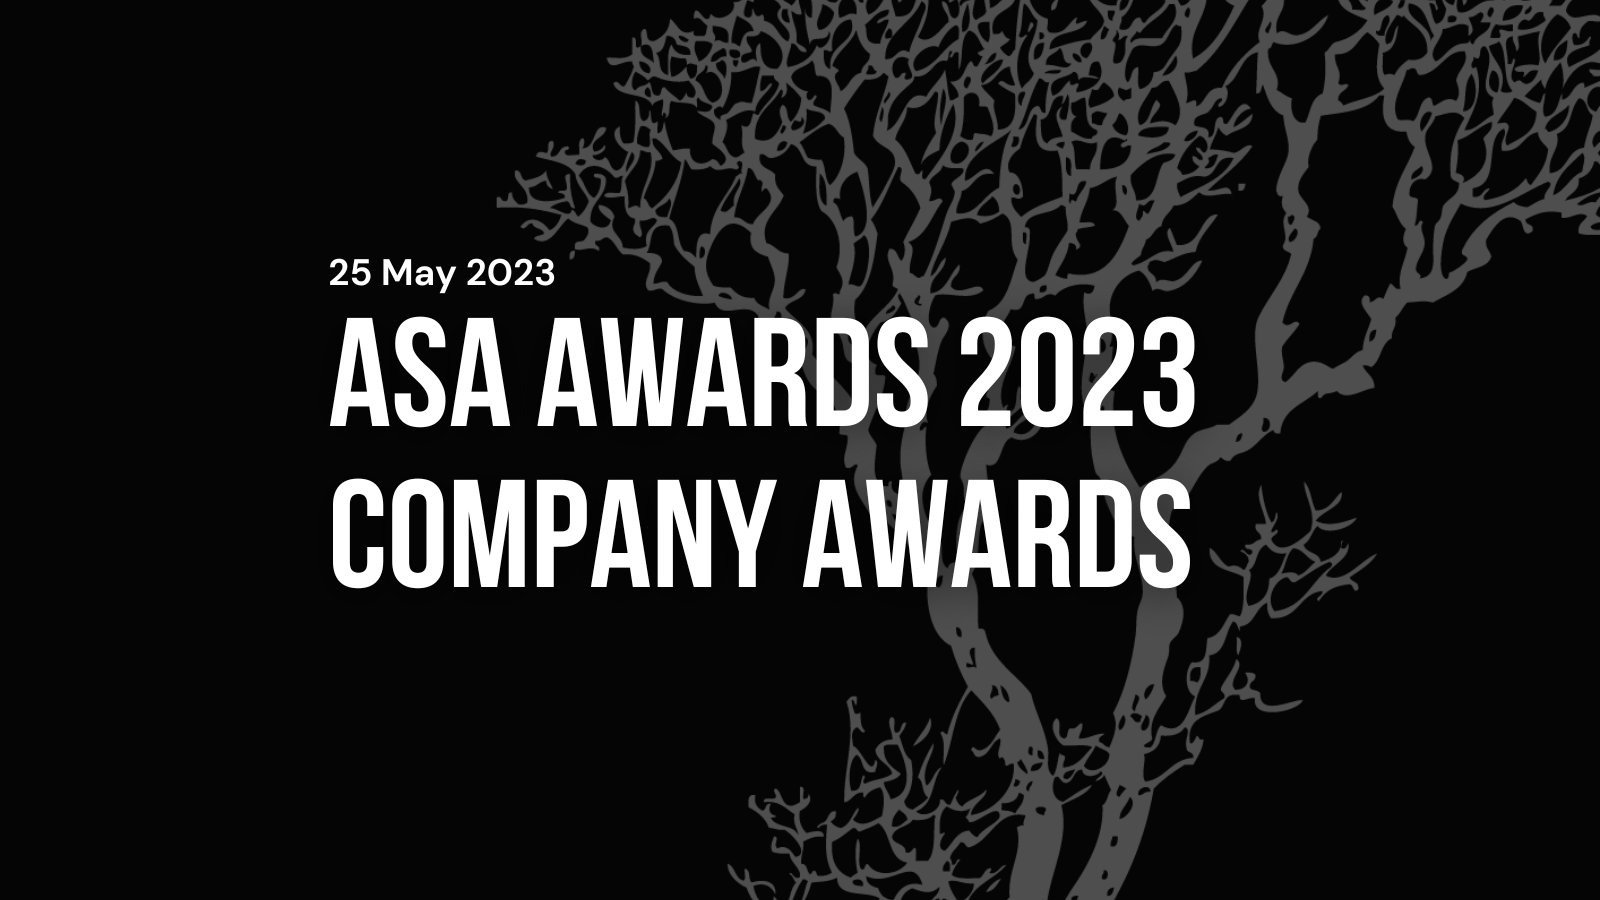 asa awards company awards 2023